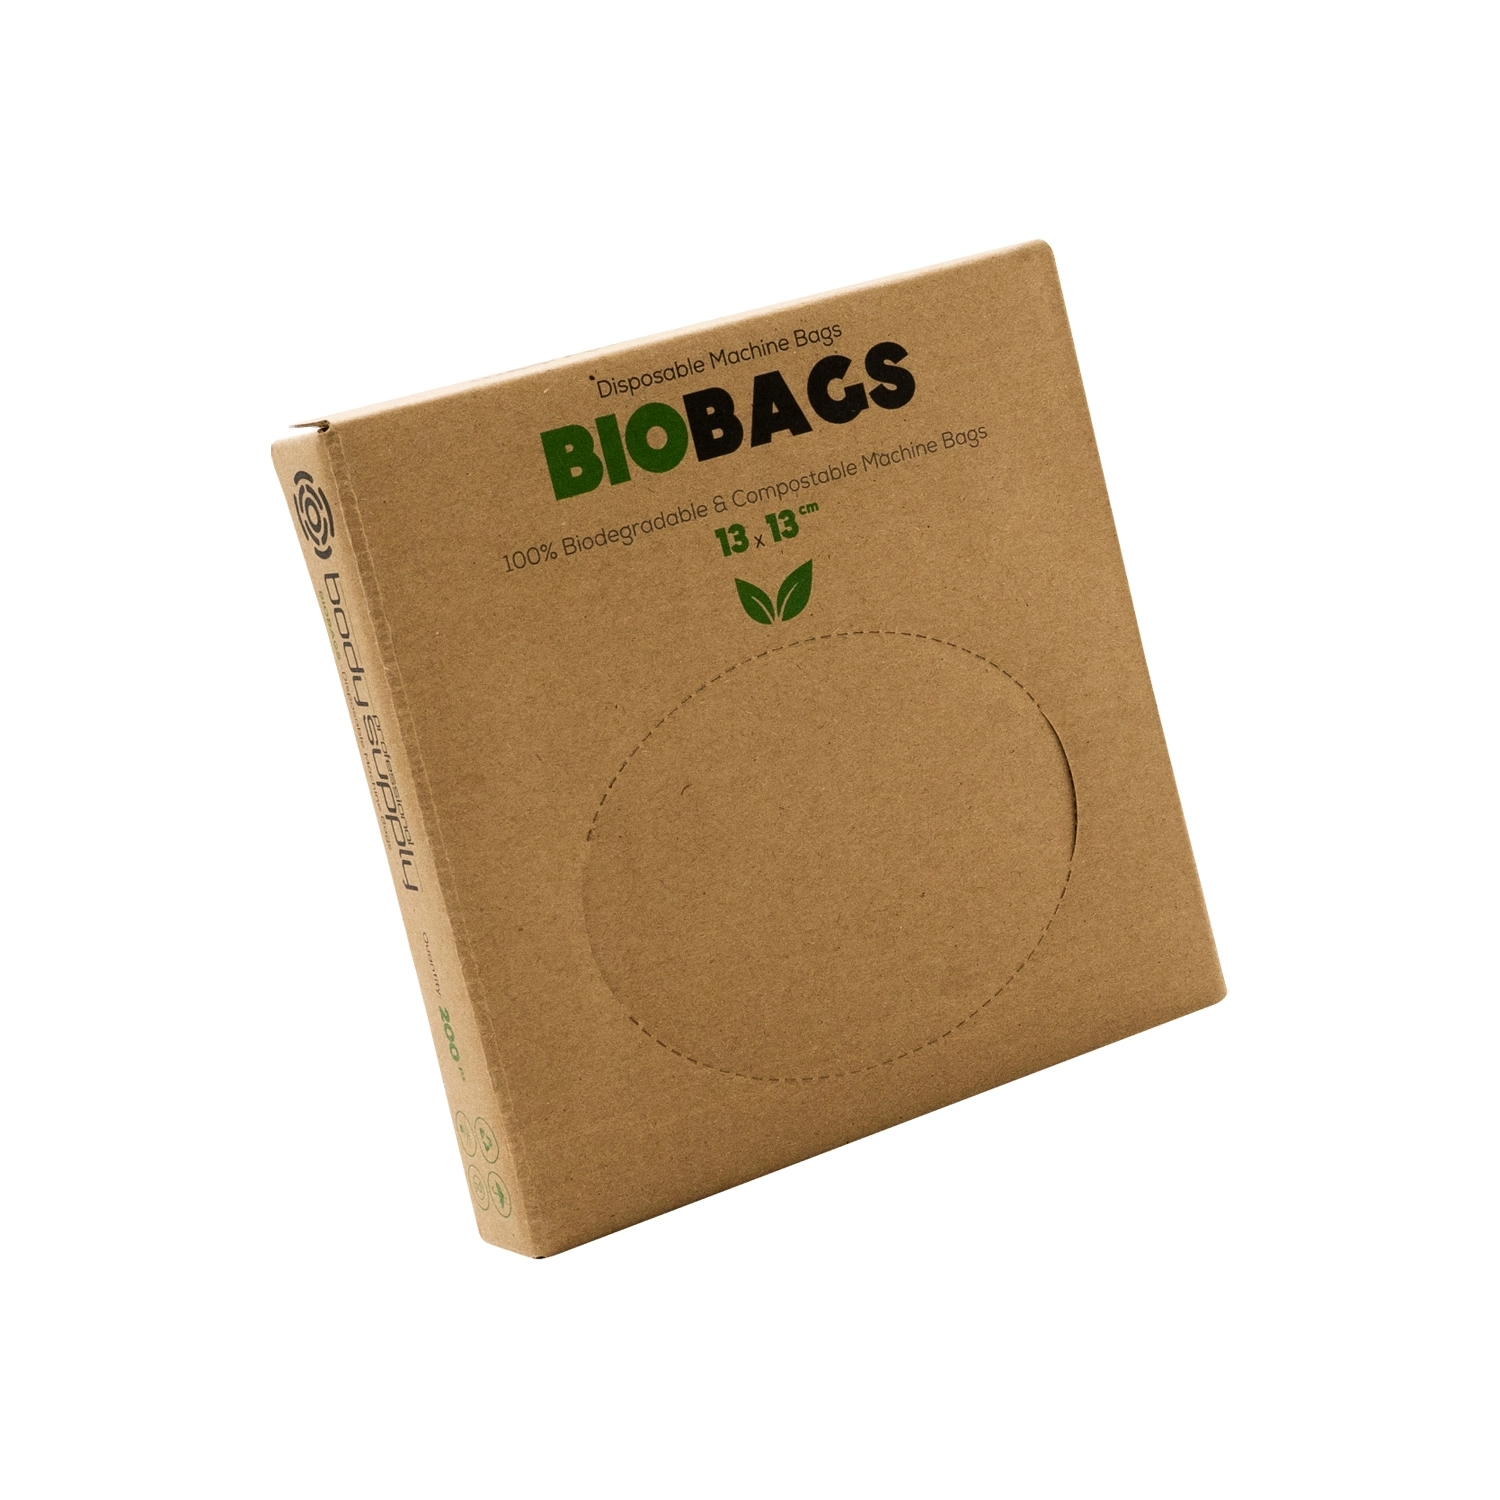 Bolsas cubre máquina biodegradables BodySupply 200 piezas - 13x13cm